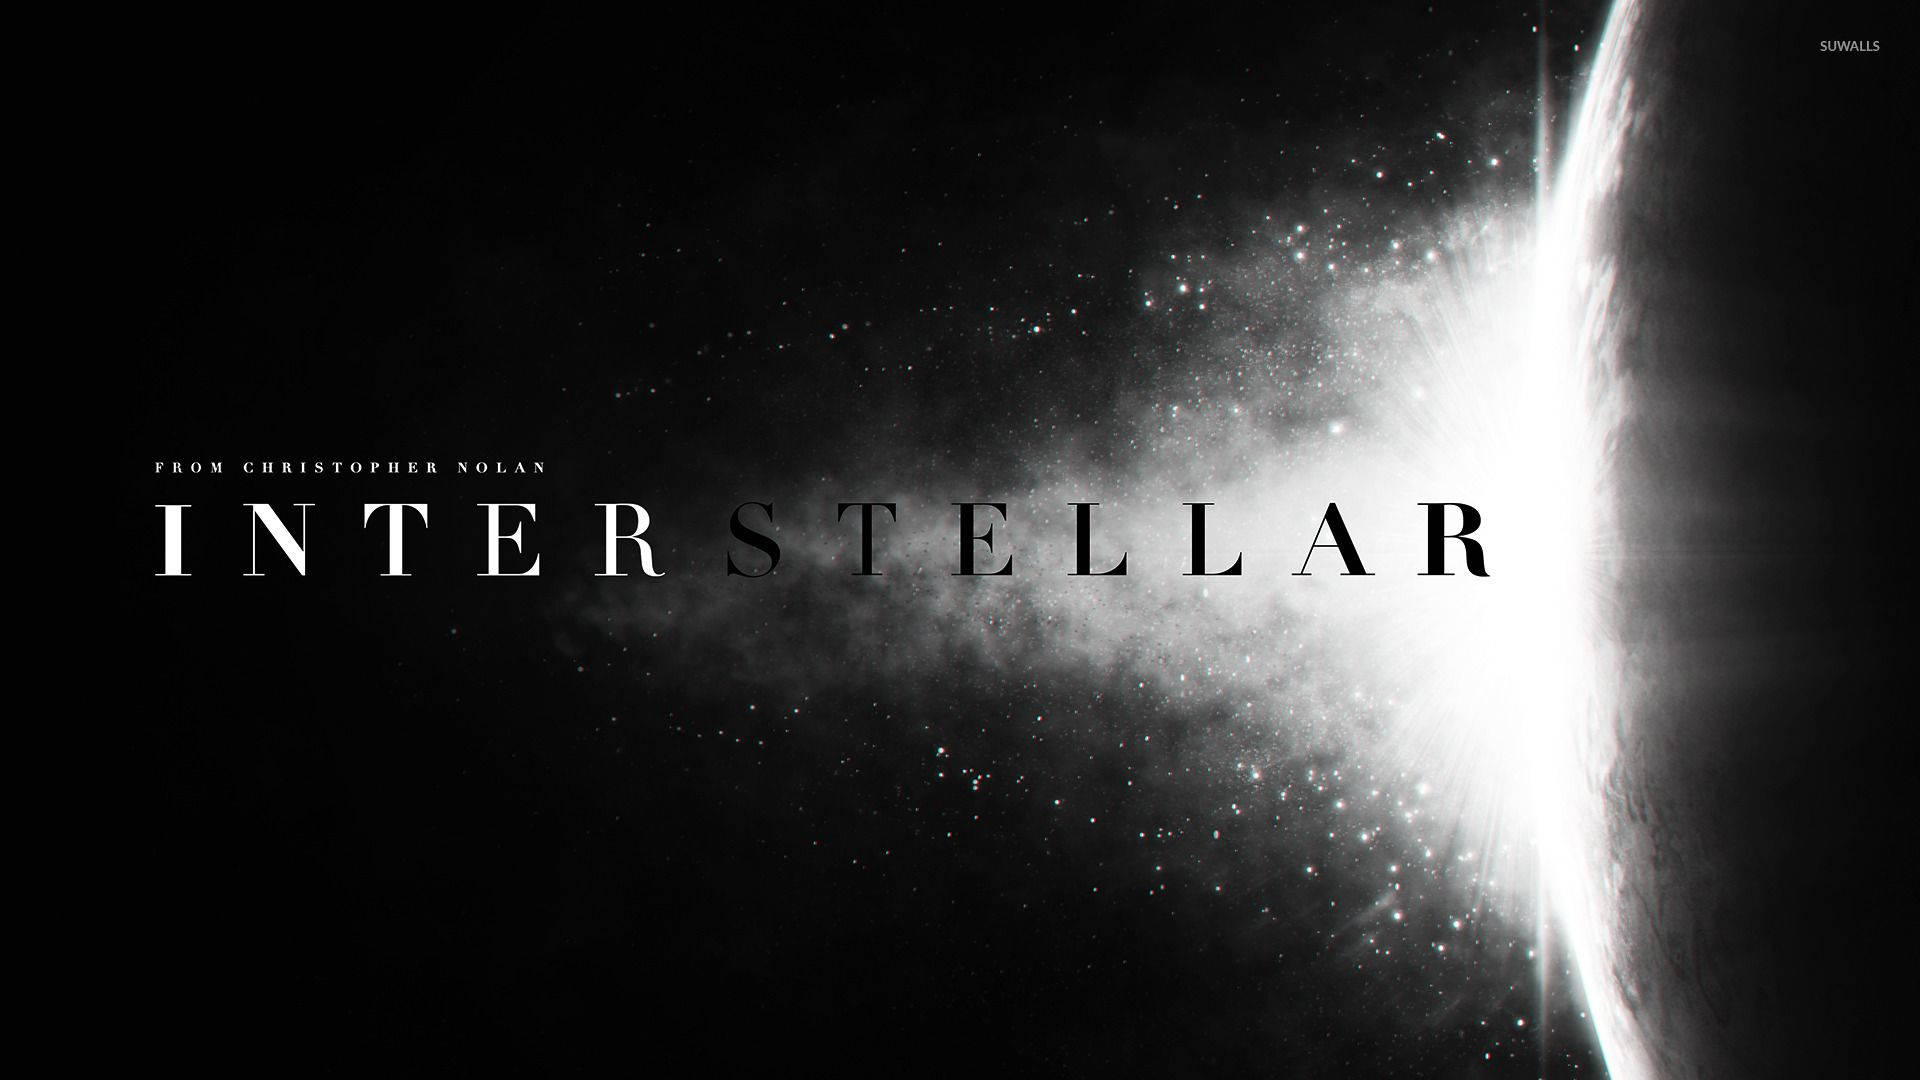 Monochrome Blast Interstellar Poster